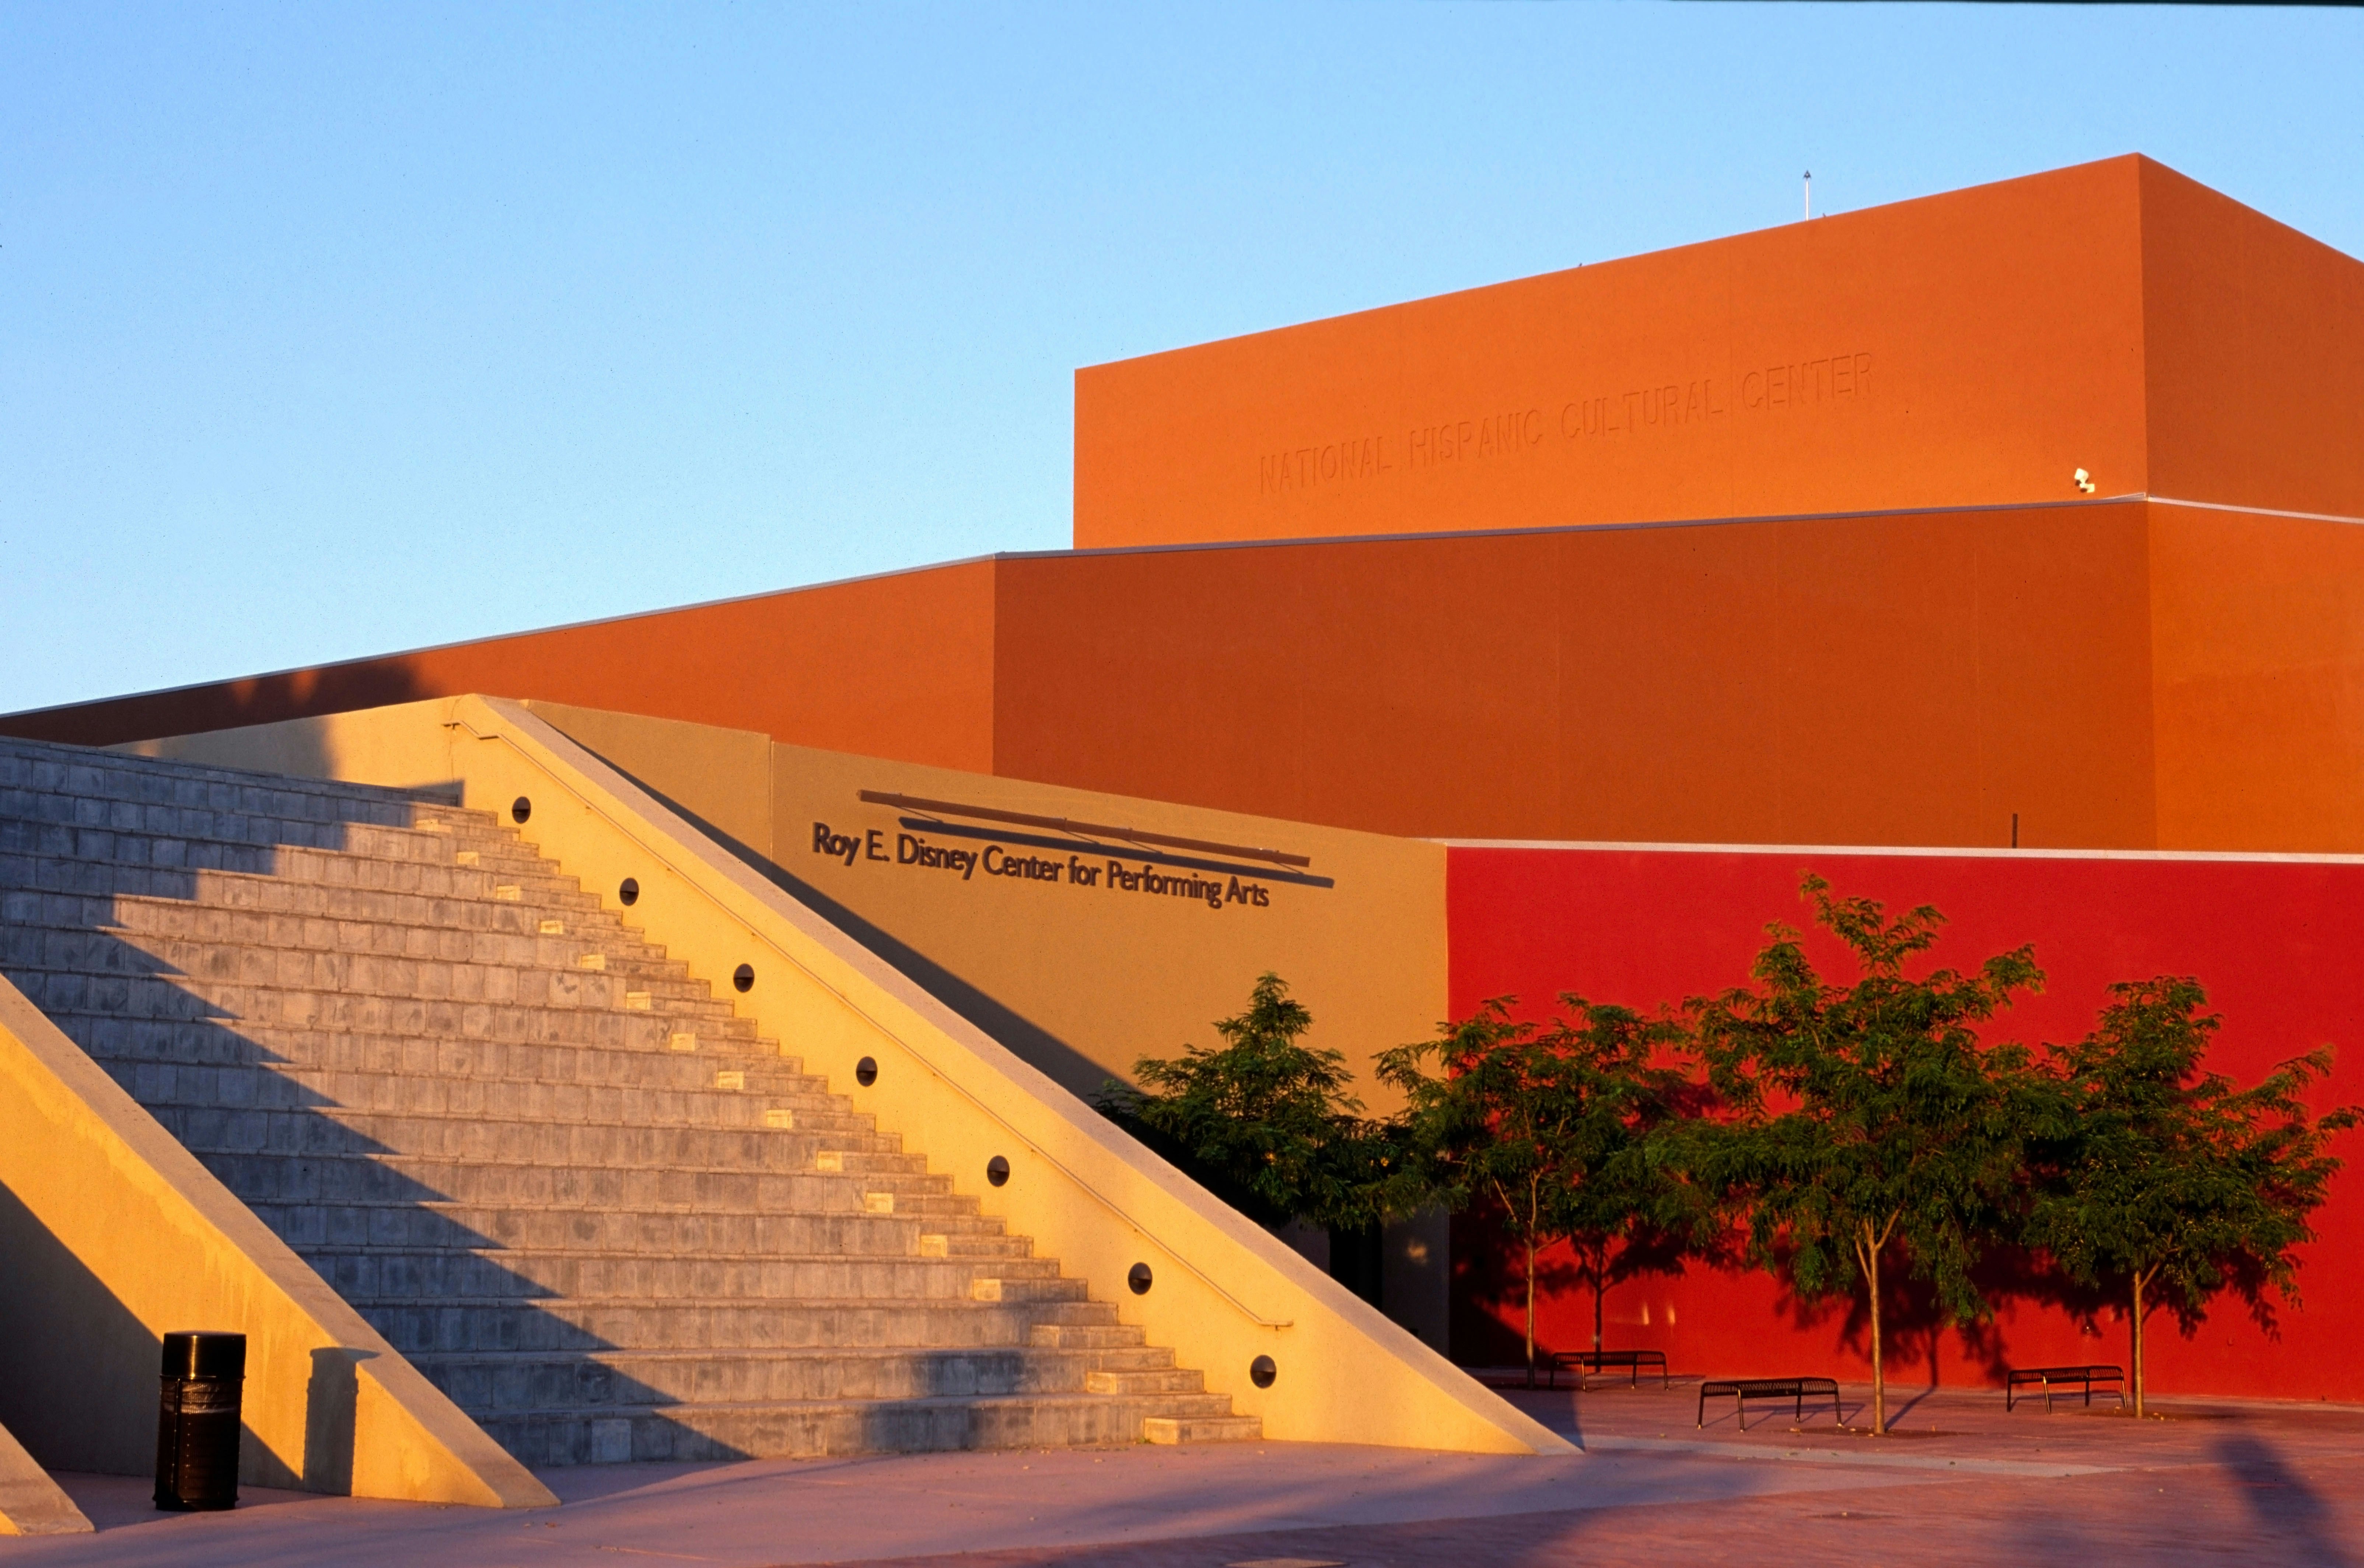 Roy E. Disney Center for Performing Arts, National Hispanic Cultural Center, Albuquerque, New Mexico USA